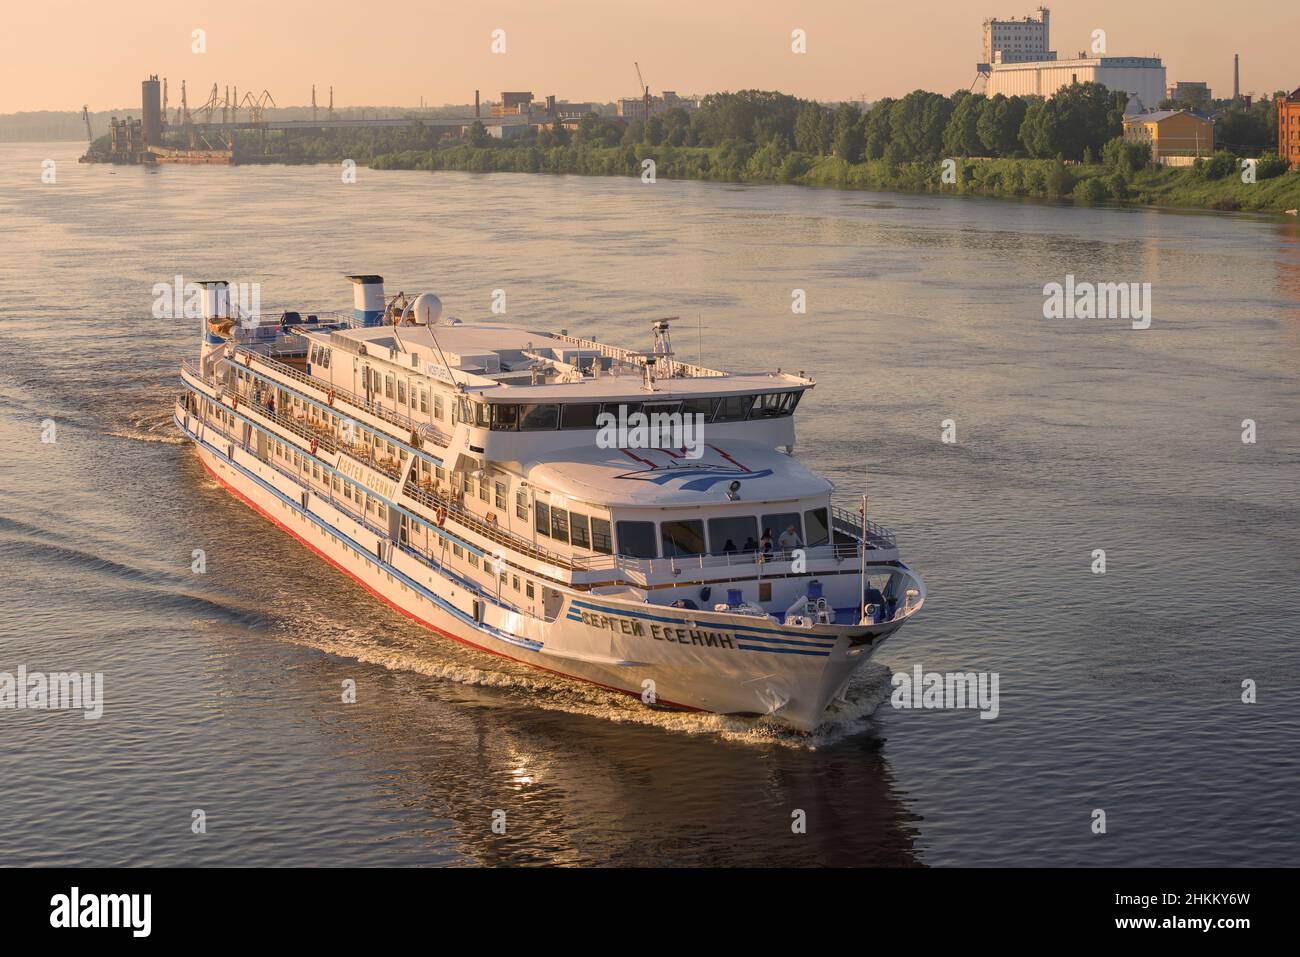 RYBINSK, RUSSIE - 16 JUILLET 2017 : bateau de croisière « Sergei Yesenin » sur la Volga, au début de la matinée de juillet Banque D'Images